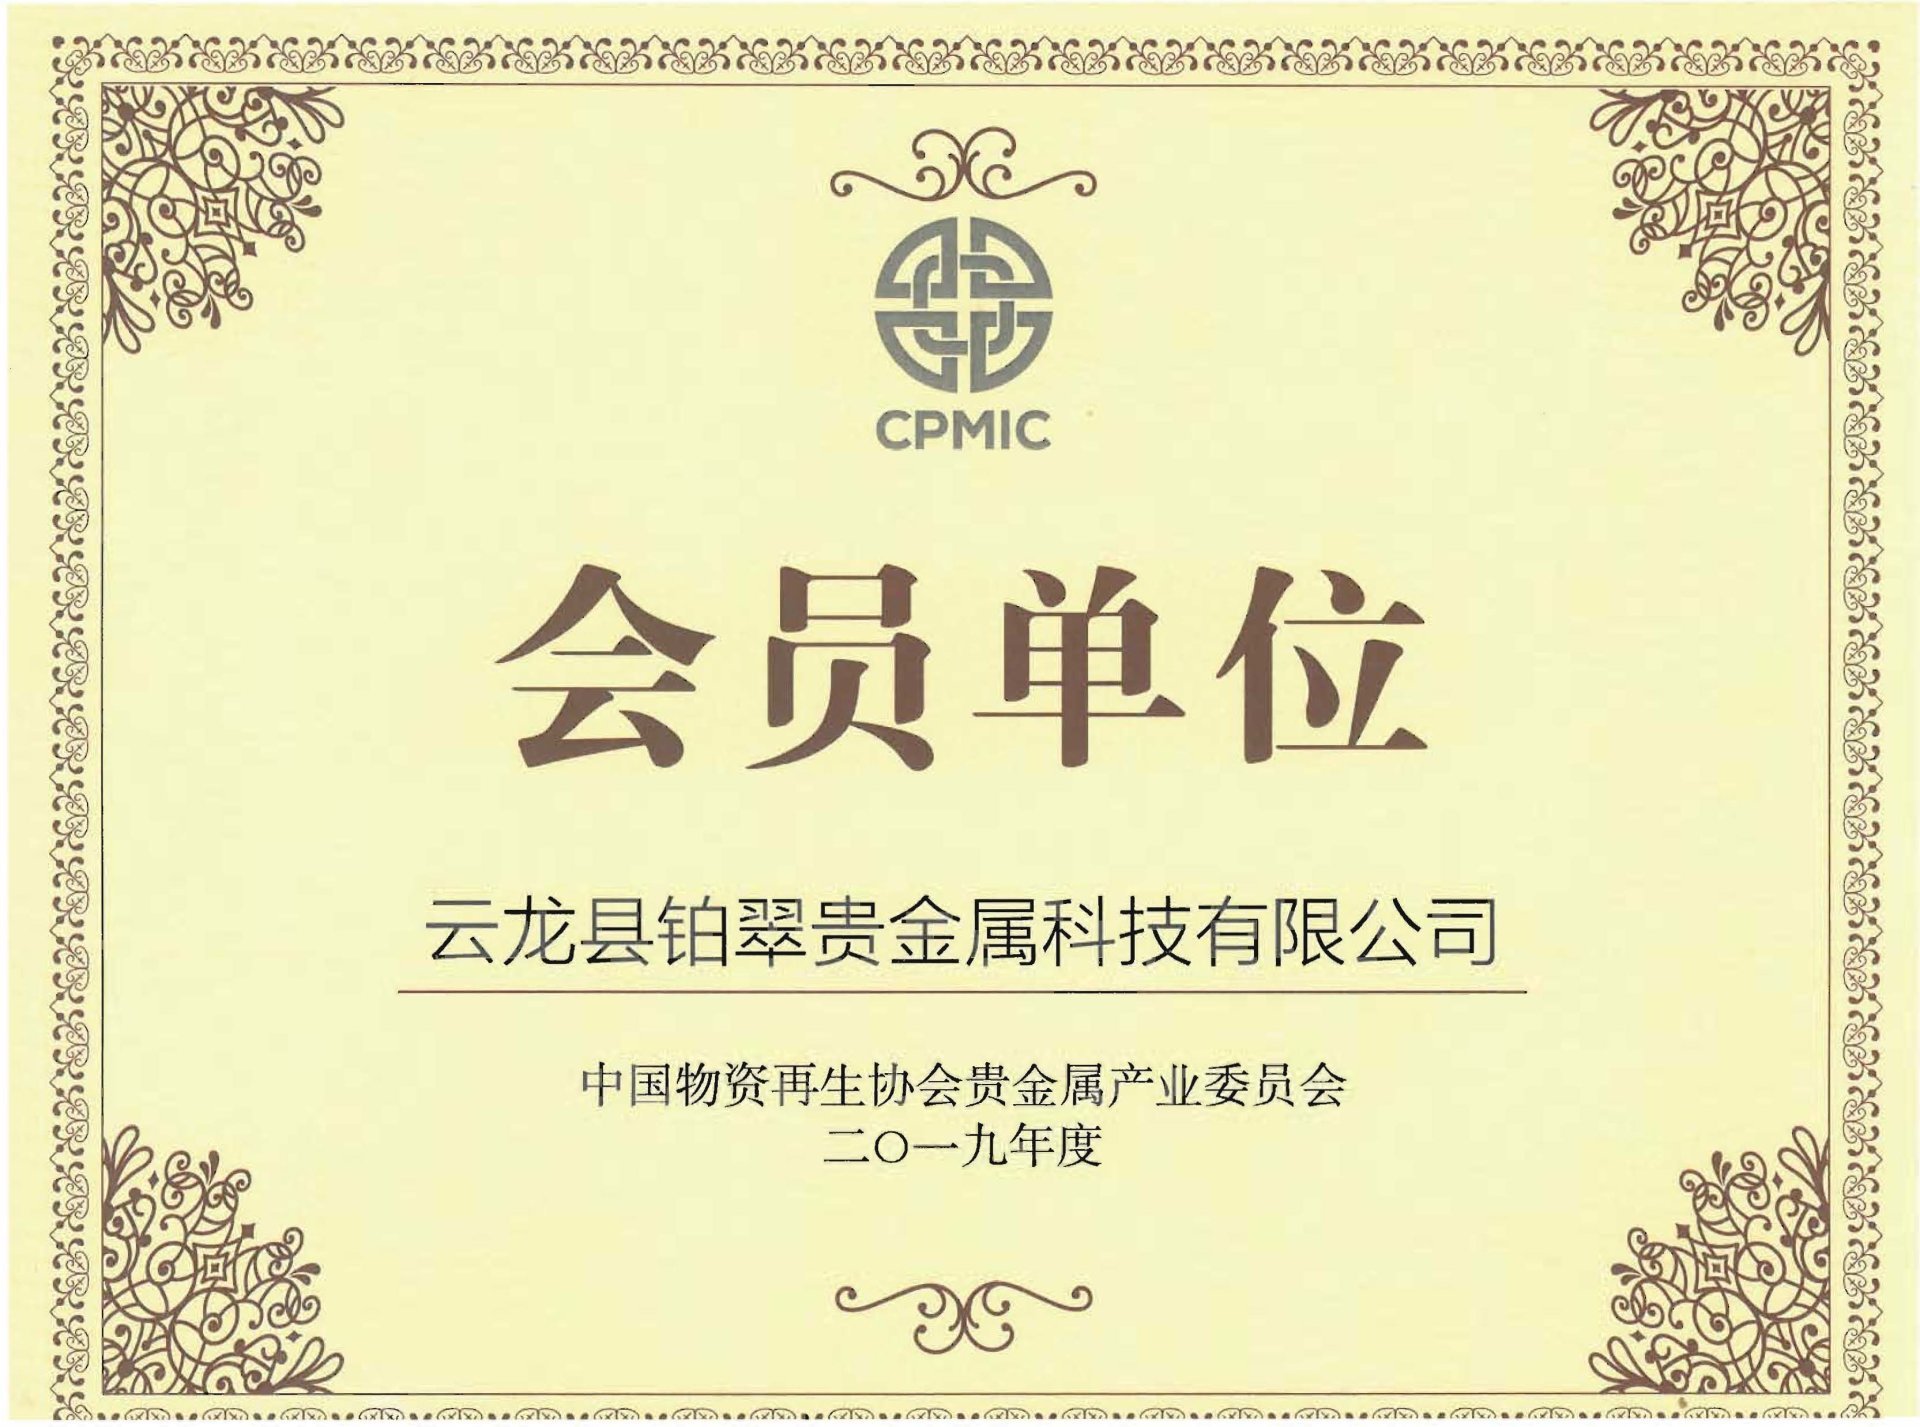 中国物资再生协会贵金属再生专业委员会会员单位